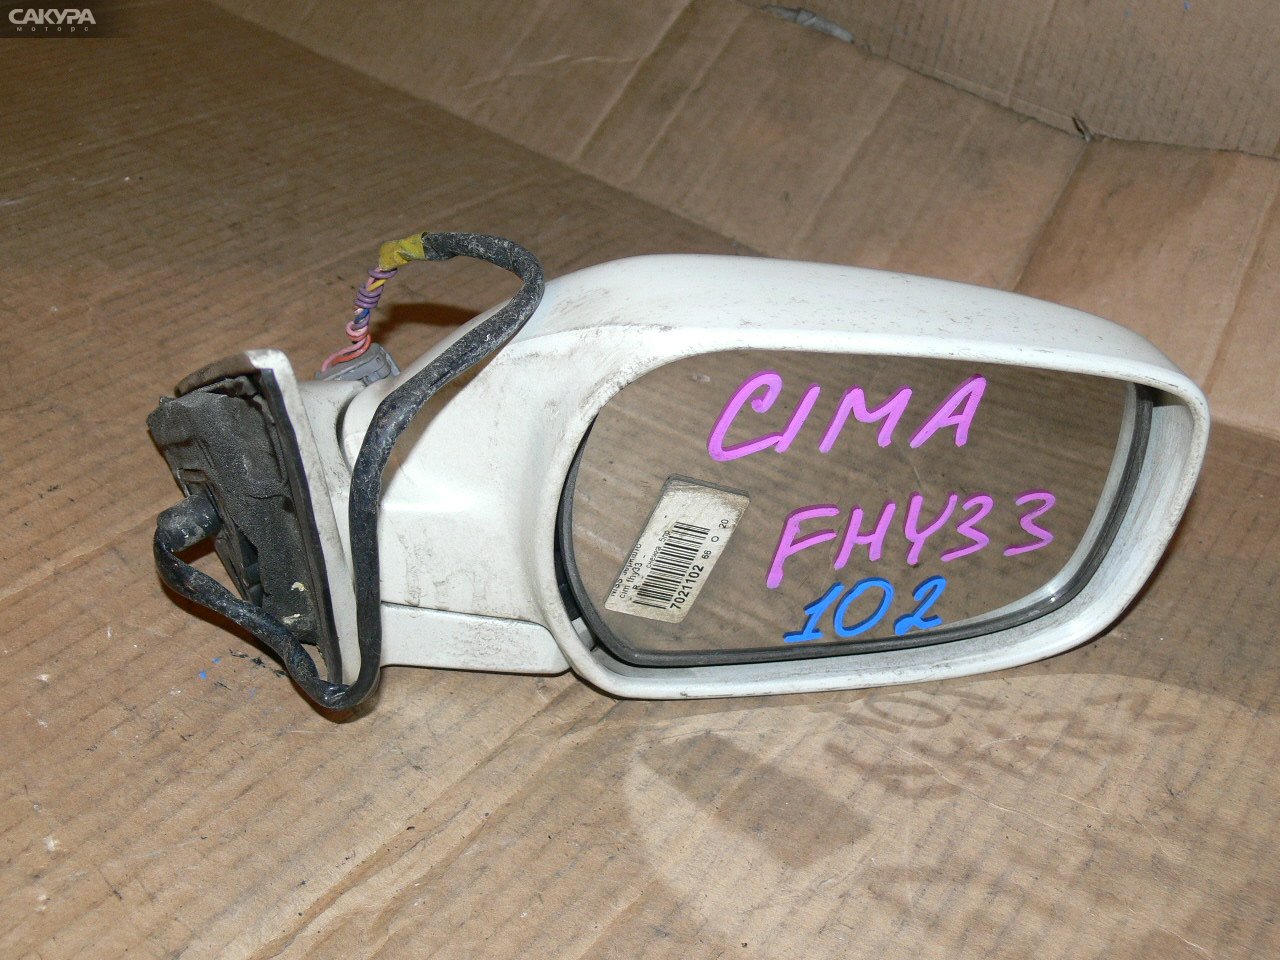 Зеркало боковое правое Nissan Cima FHY33: купить в Сакура Иркутск.